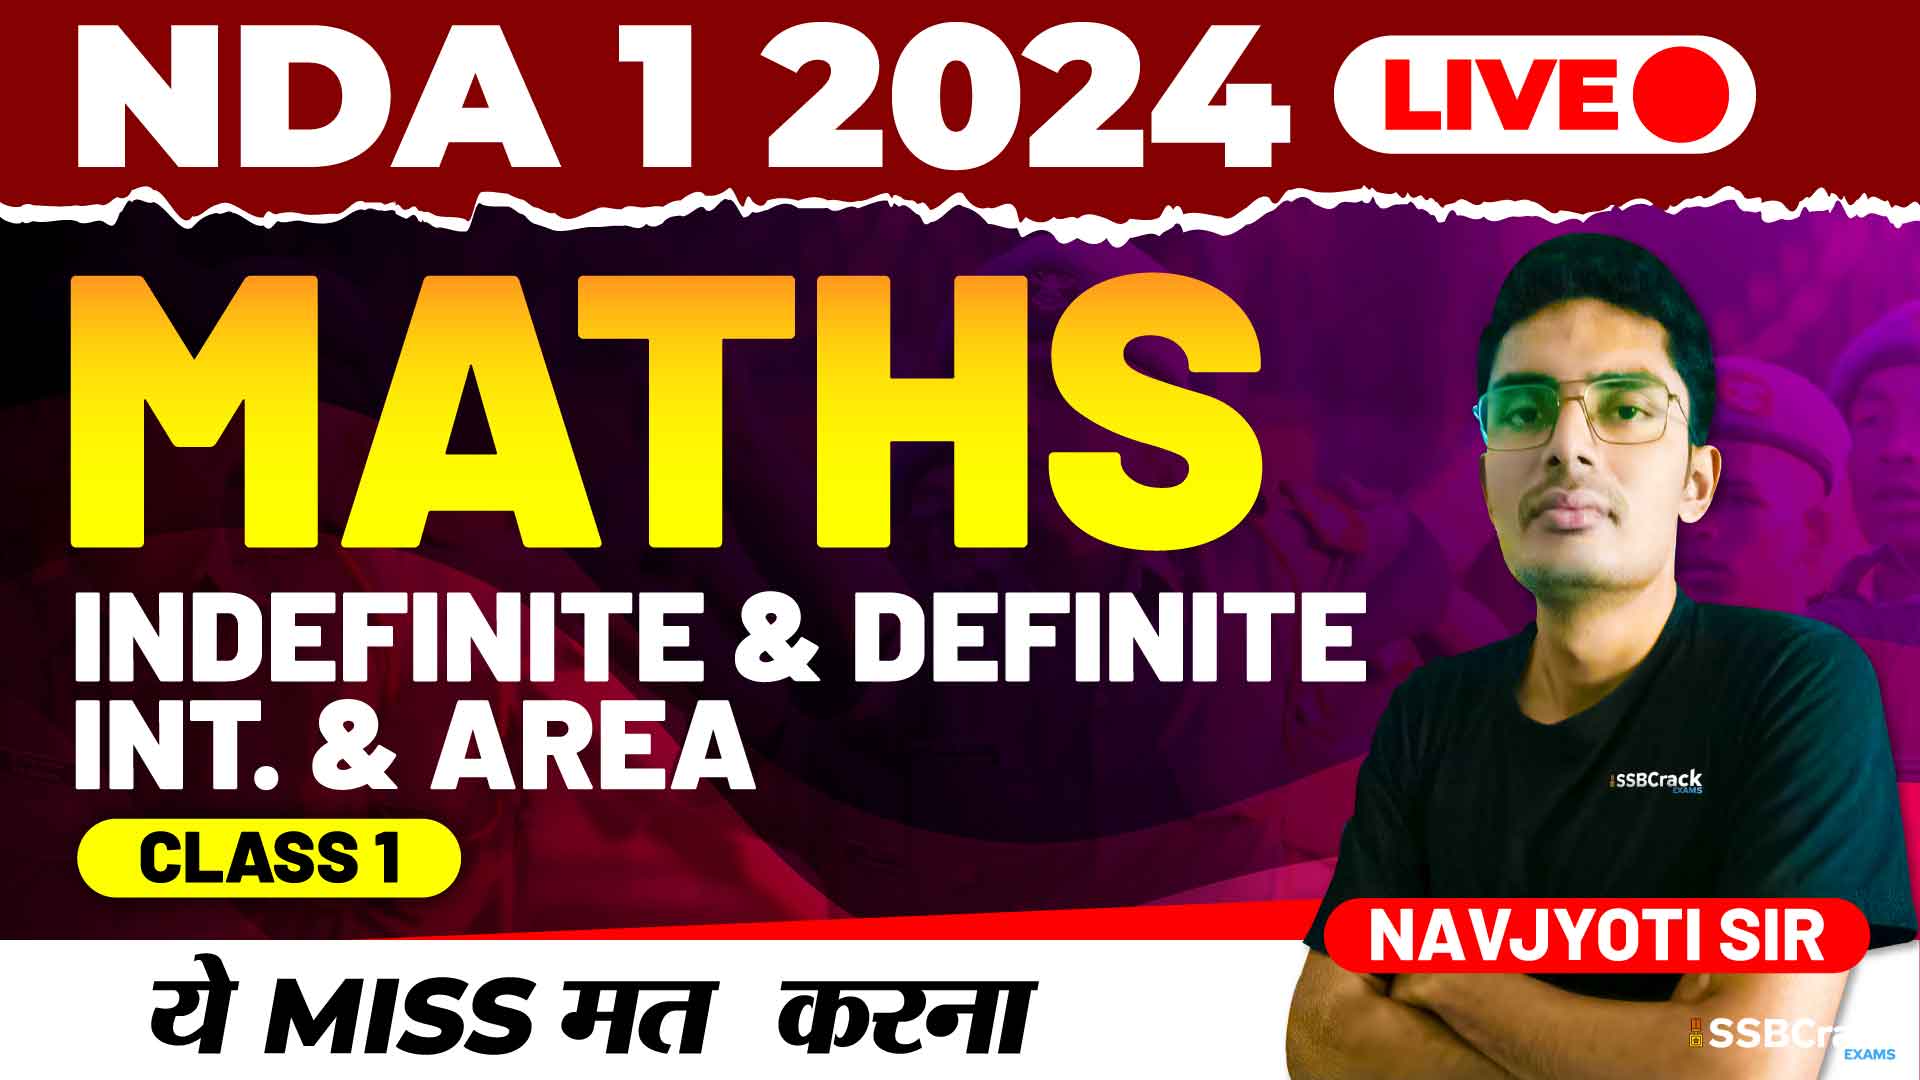 NDA 1 2024 Maths Indefinite Definite Int. Area Class 1